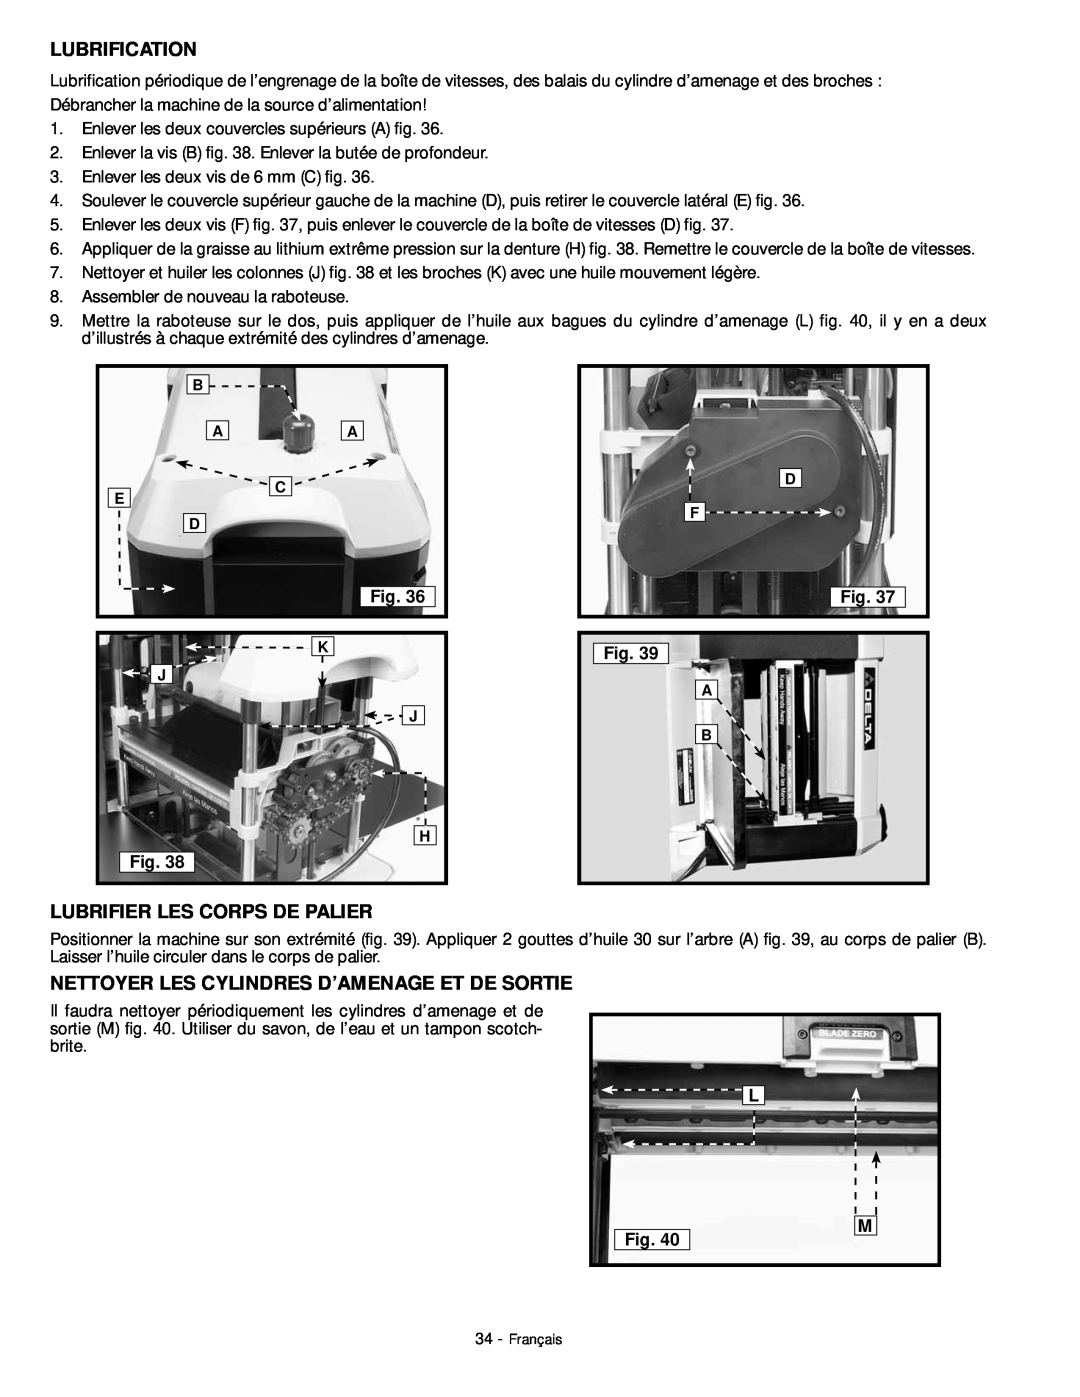 DeWalt 18657 instruction manual Lubrification, Lubrifier Les Corps De Palier, Nettoyer Les Cylindres D’Amenage Et De Sortie 